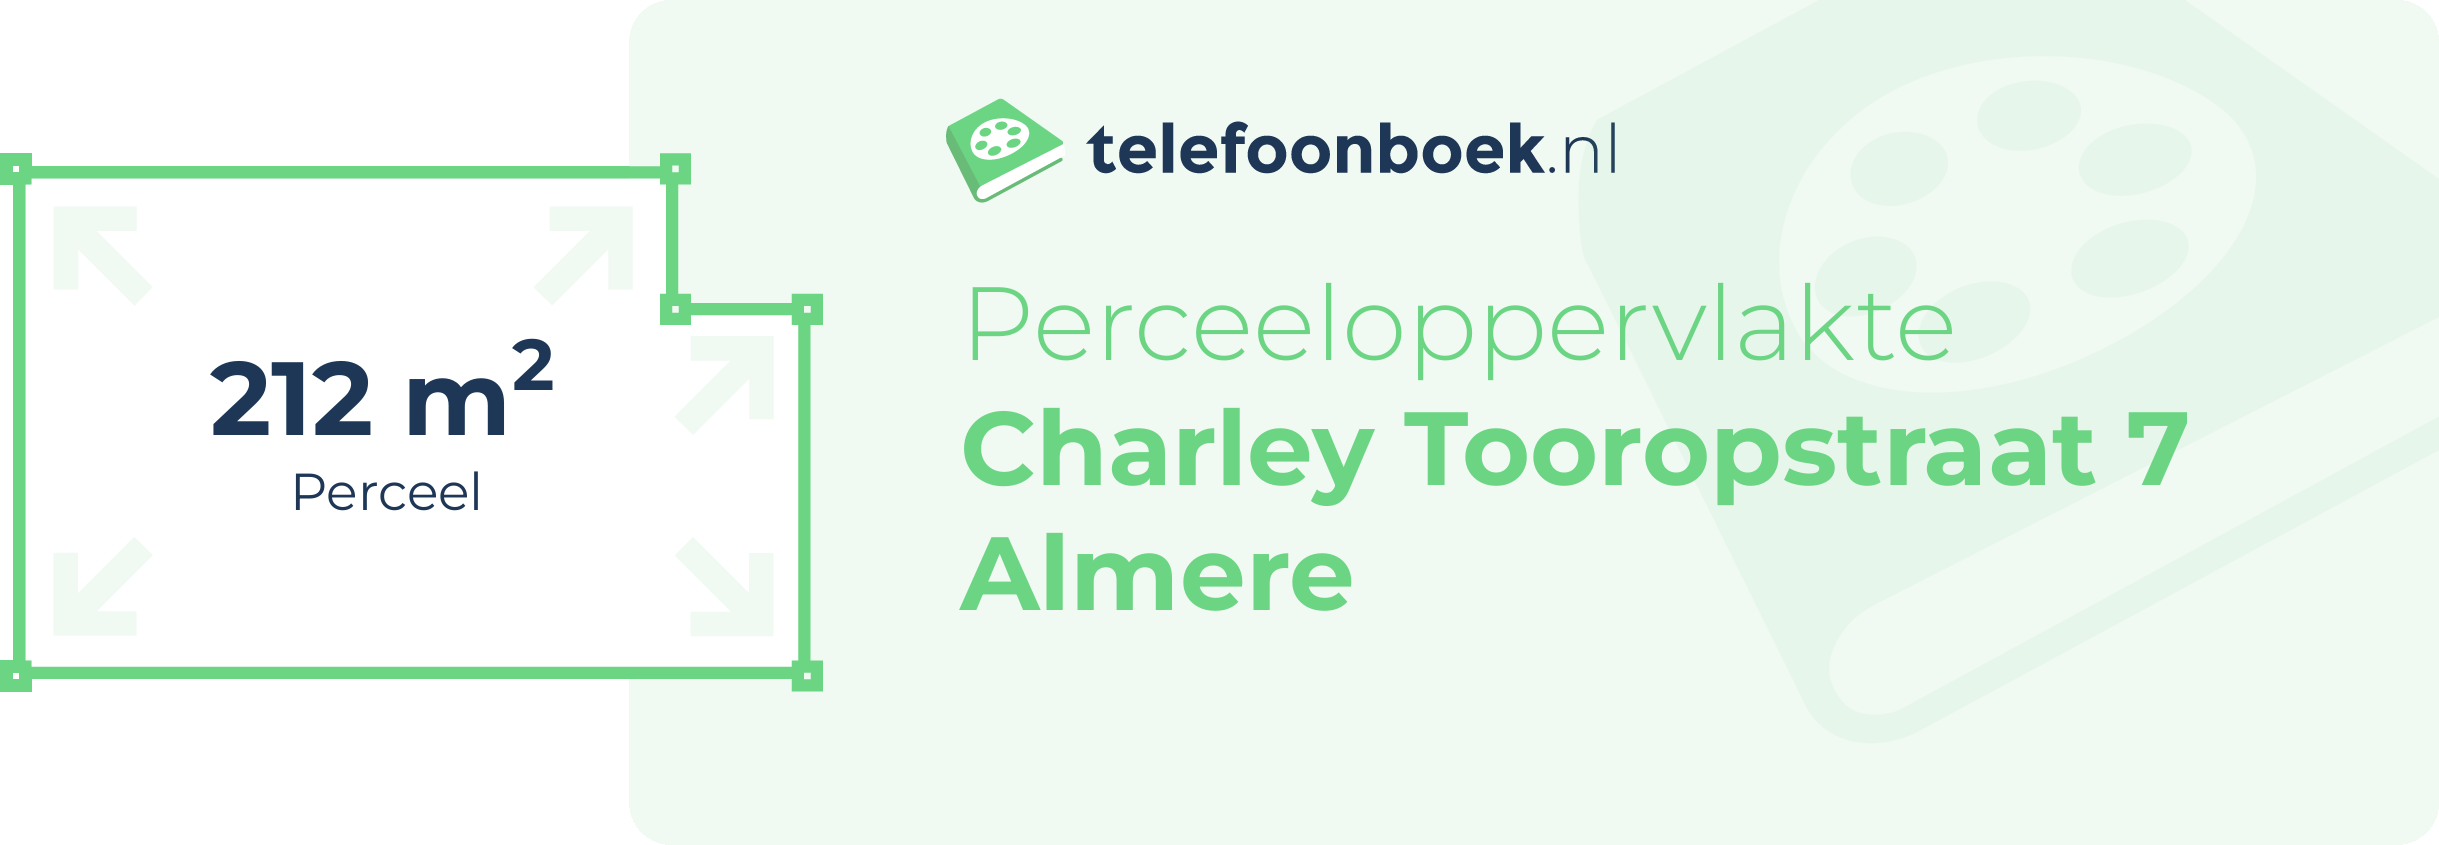 Perceeloppervlakte Charley Tooropstraat 7 Almere